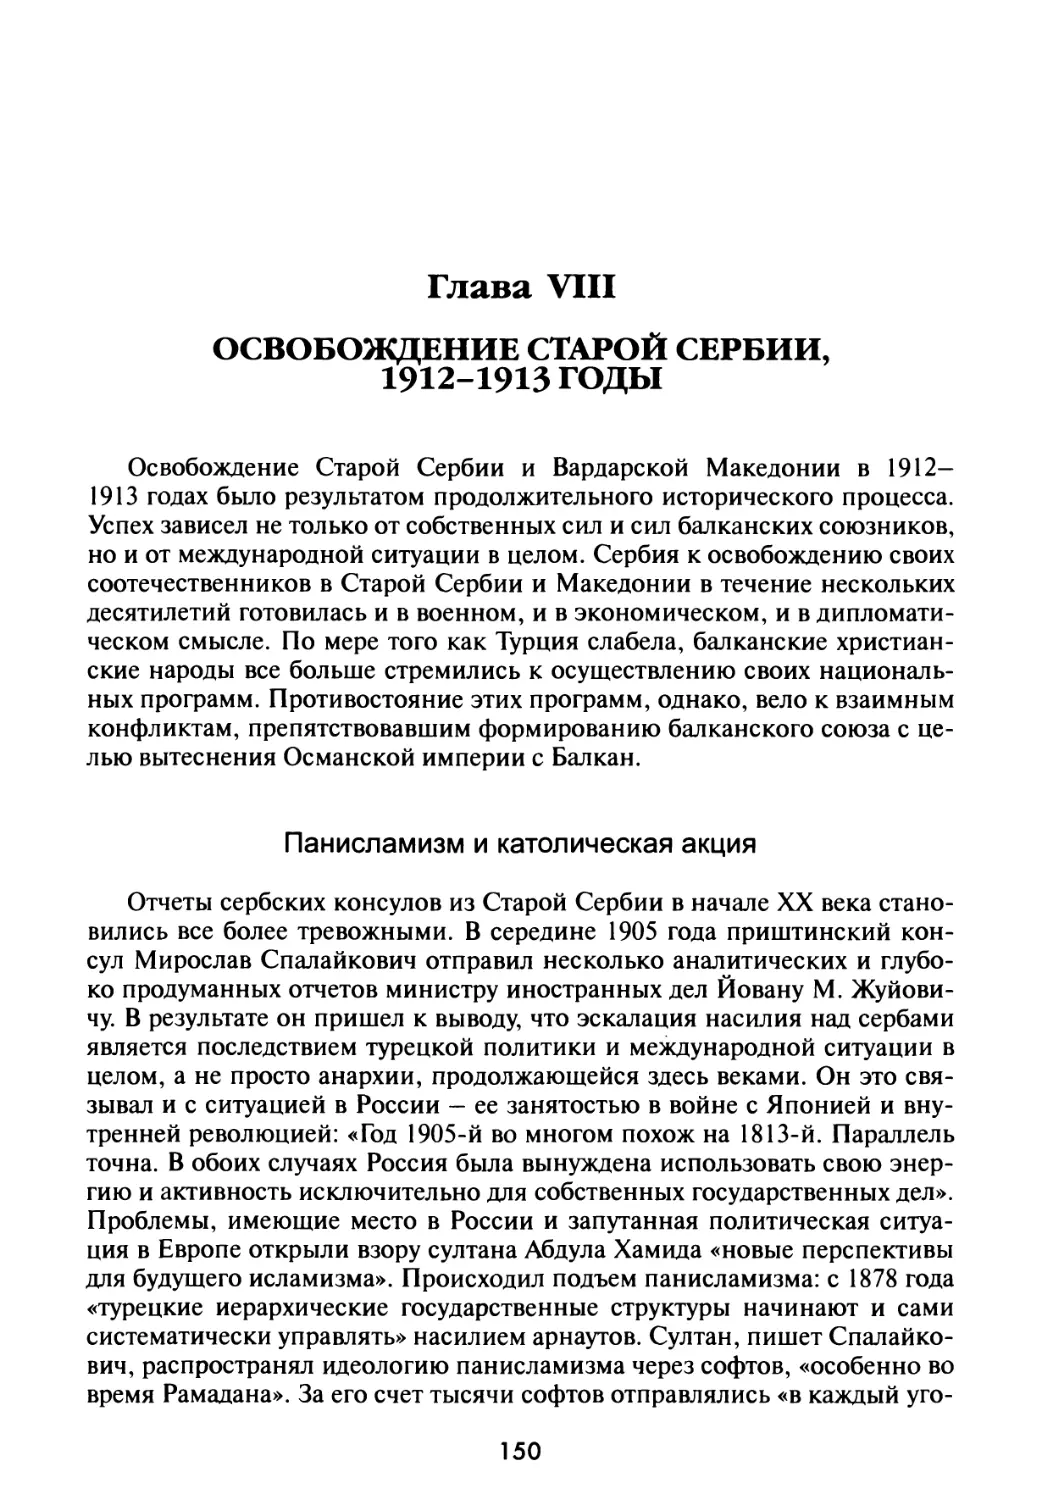 Глава VIII. Освобождение Старой Сербии, 1912-1913 гг